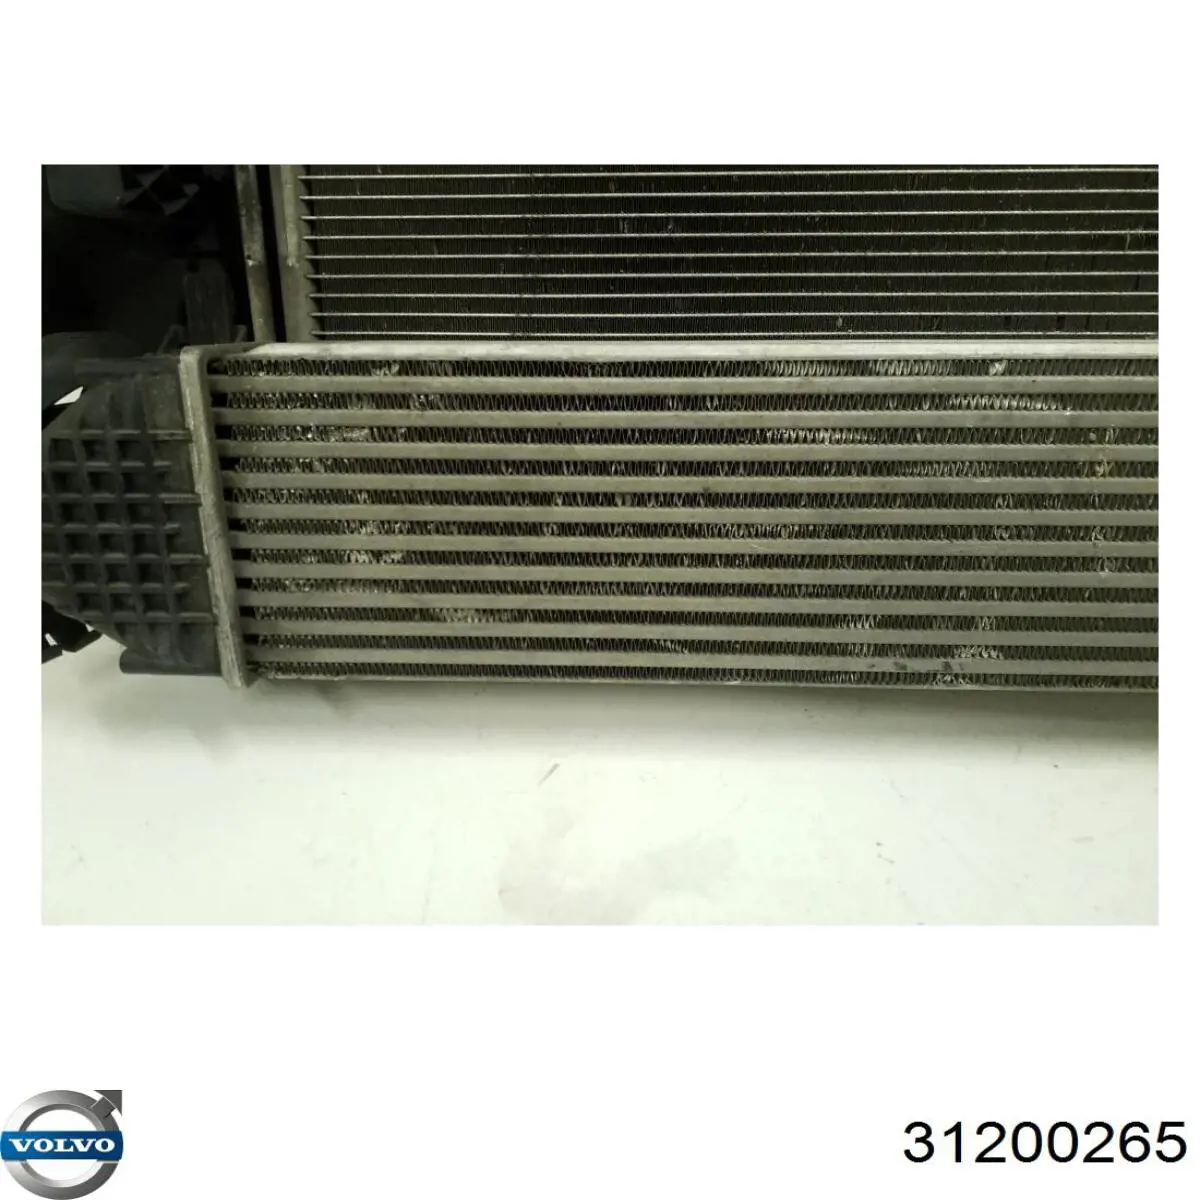 31200265 Volvo difusor de radiador, ventilador de refrigeración, condensador del aire acondicionado, completo con motor y rodete